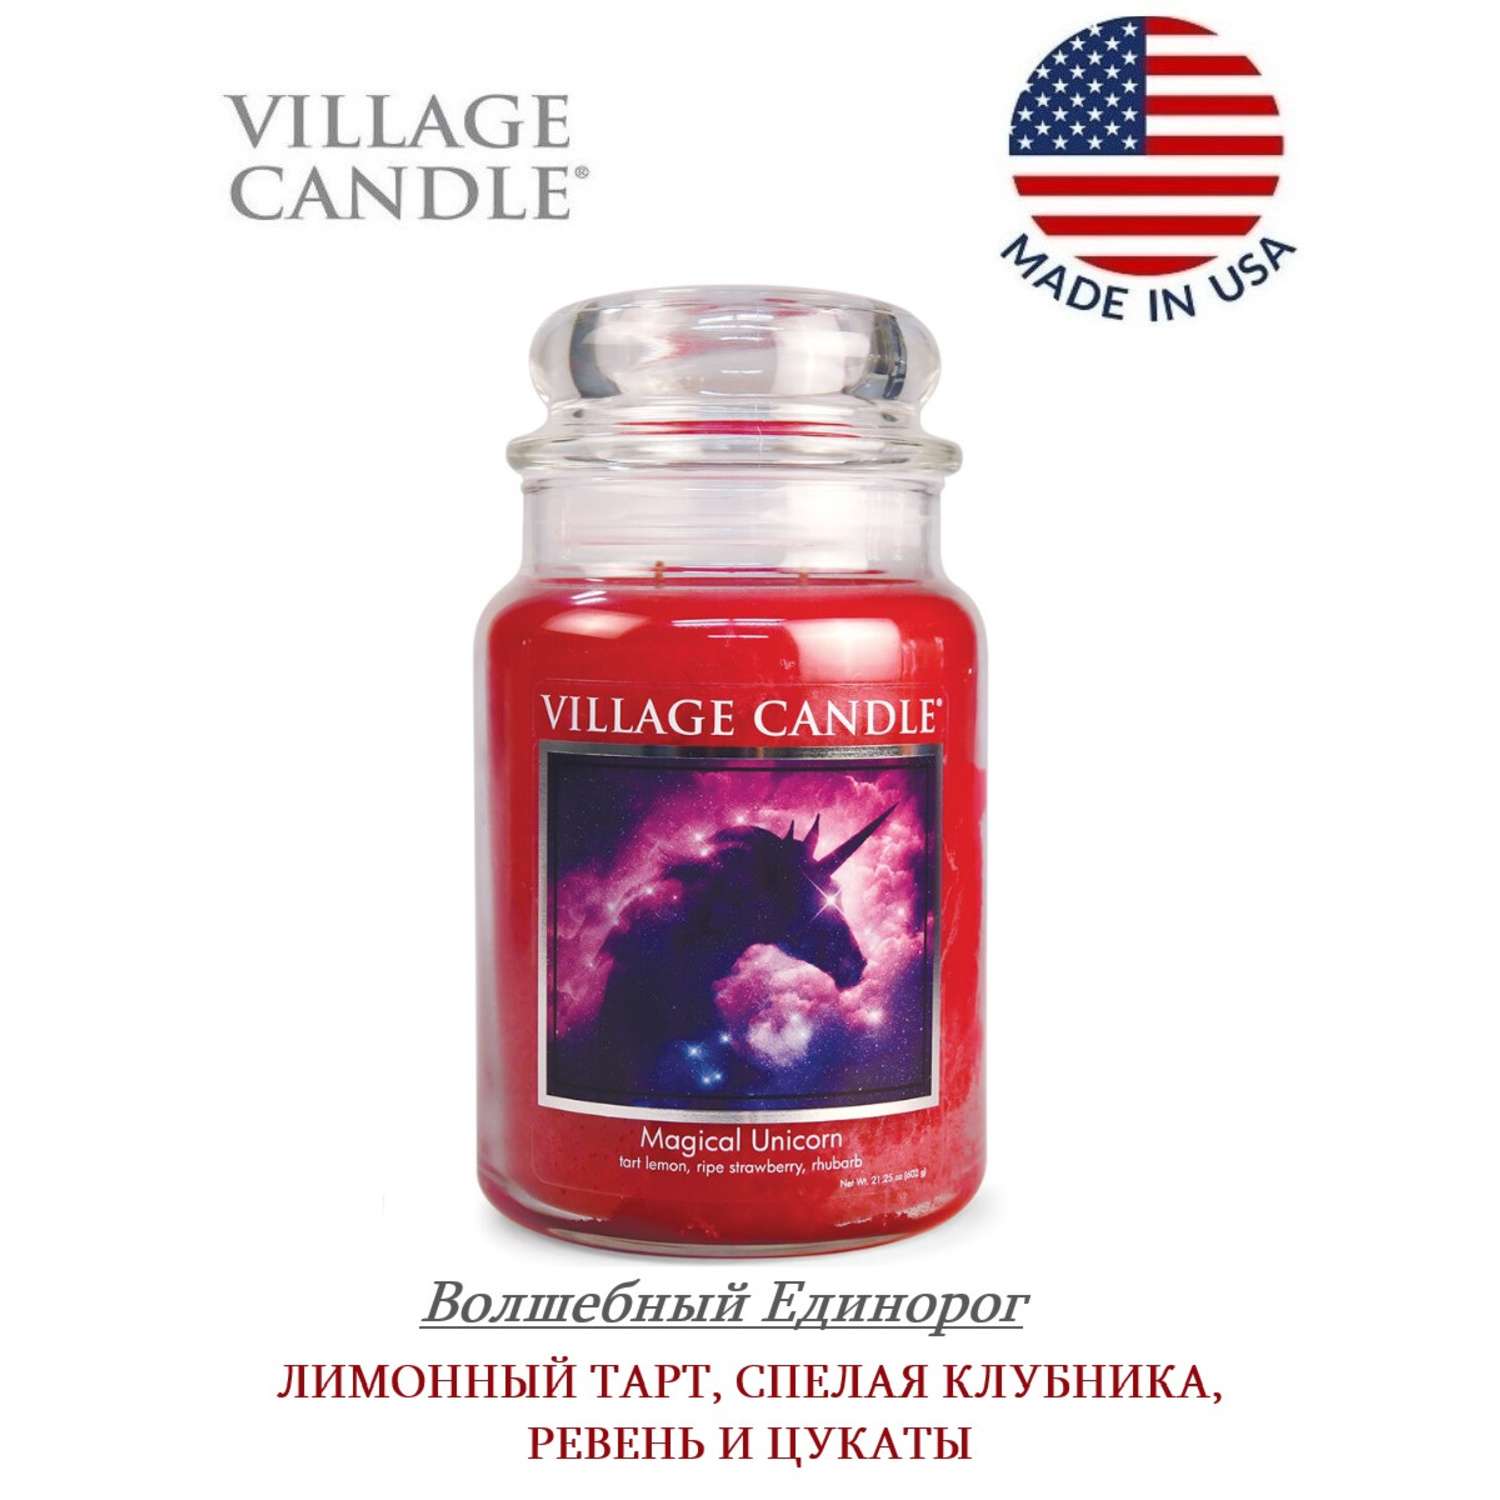 Свеча Village Candle ароматическая Волшебный Единорог 4260053 - фото 2